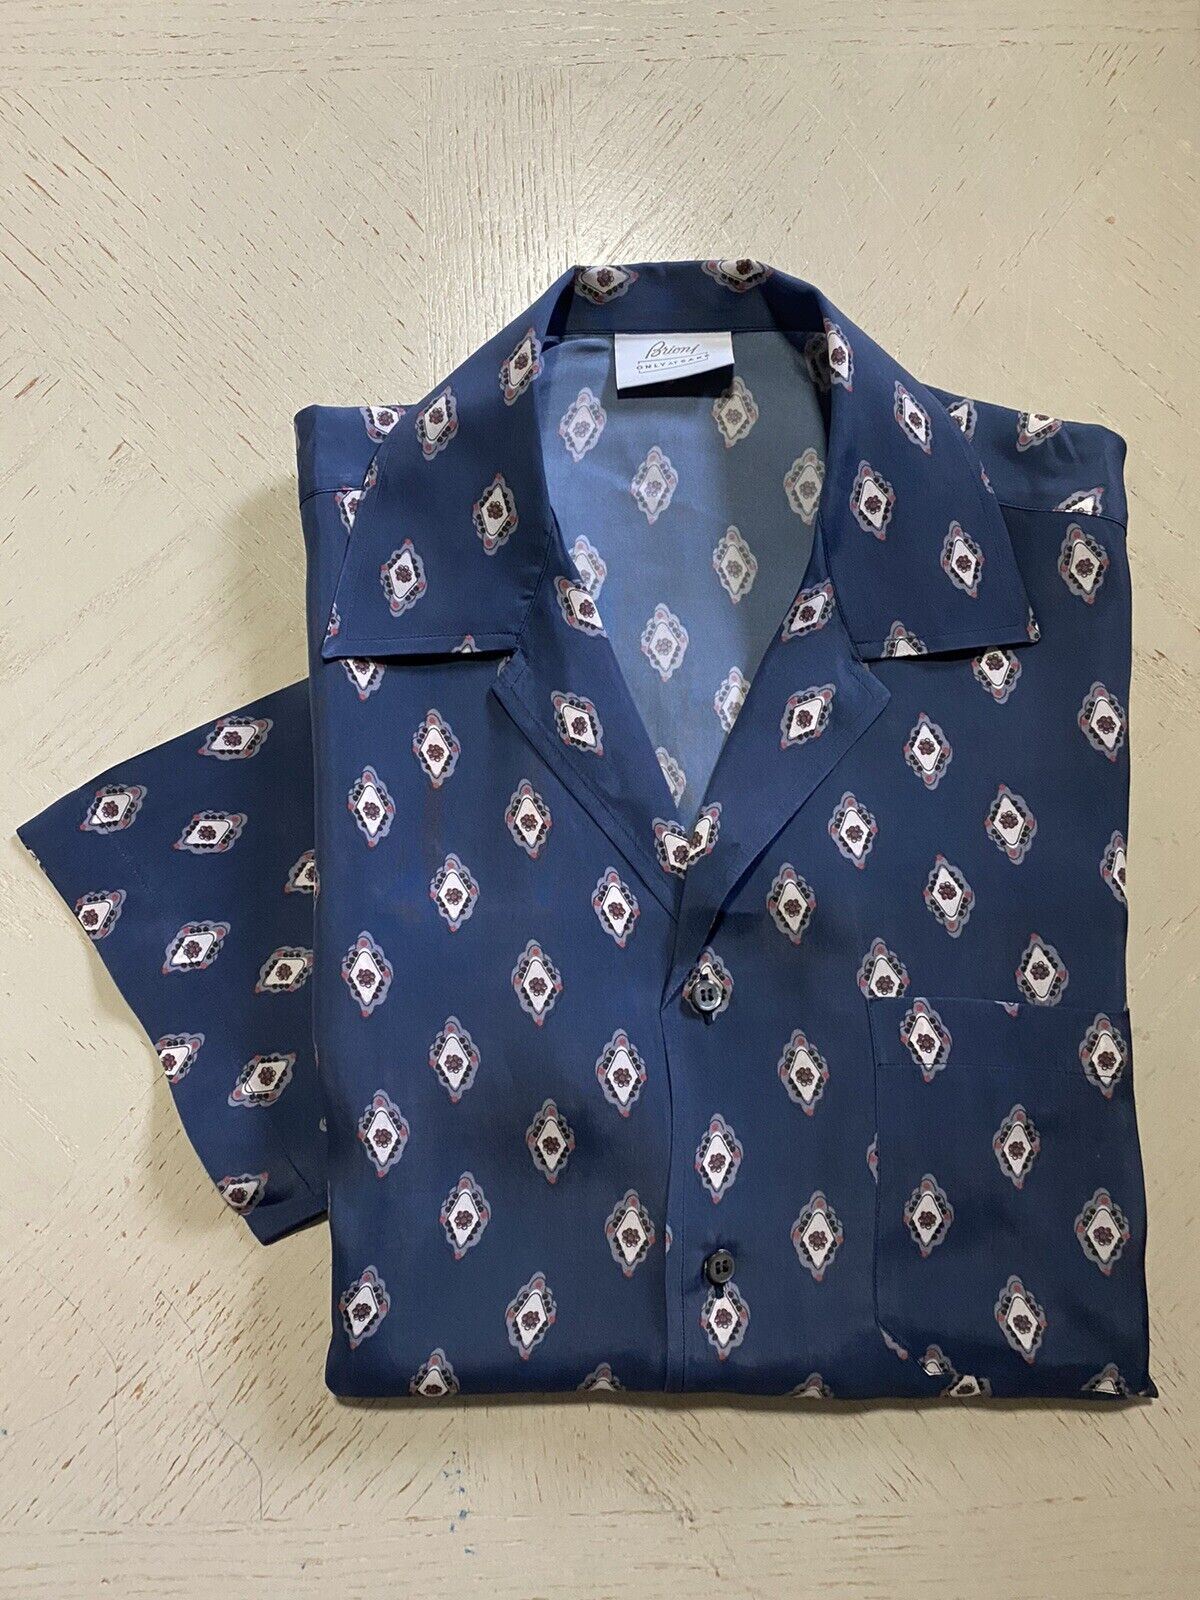 Neu mit Etikett: 675 $ Brioni Exklusives Cupro-Kurzarmhemd mit Medaillon-Print Blau M